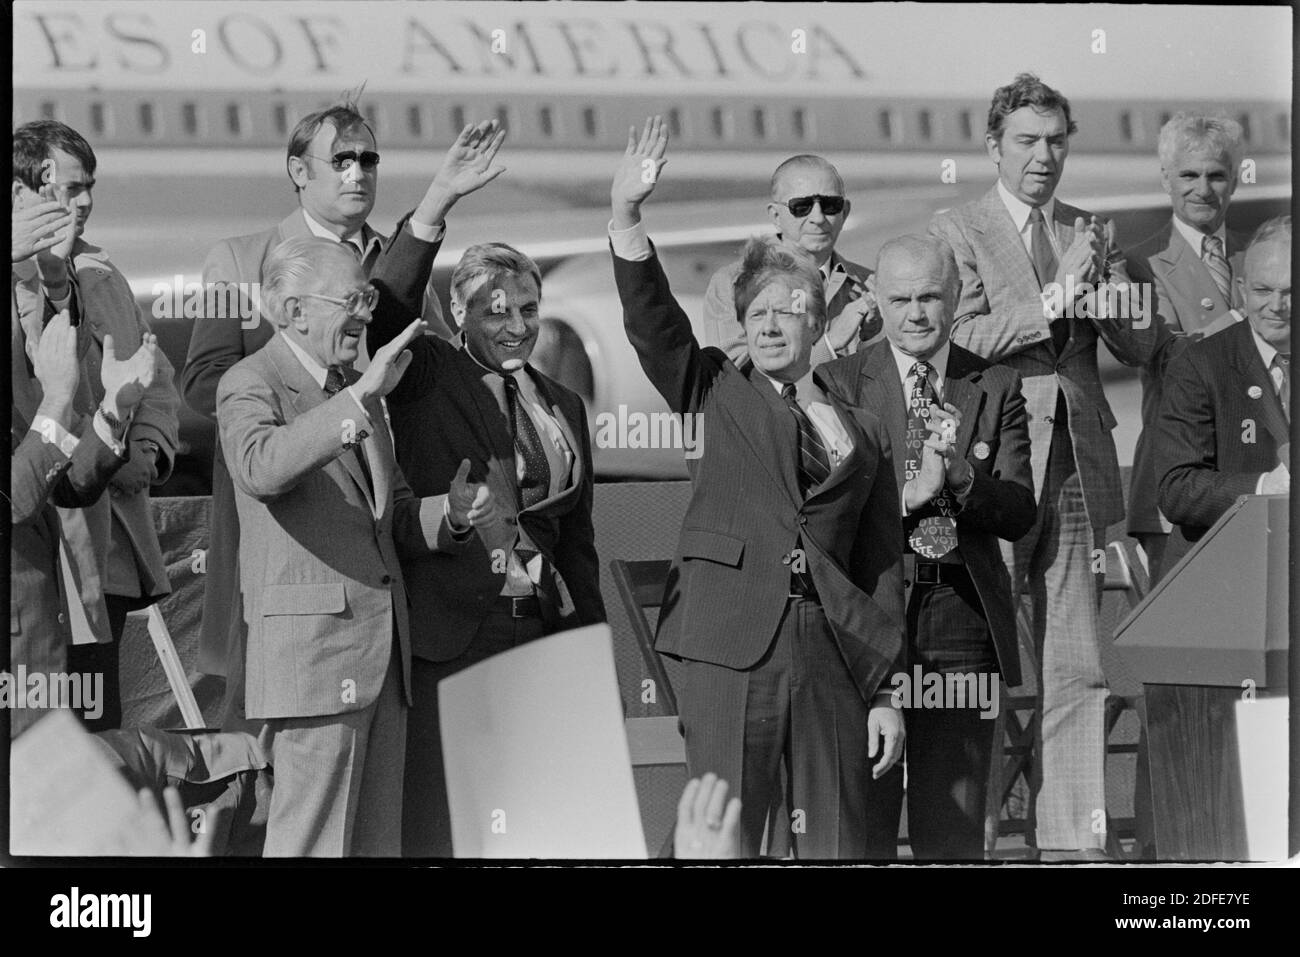 Präsident Jimmy Carter und Vizepräsident Walter Mondale machen 1980 einen Wahlkampfstopp in Cleveland Ohio. Auf der linken Seite befindet sich US-Senator Howard Metzenbaum. Rechts sehen Sie US Senator John Glenn und US-Repräsentant John Seiberling. Ernie Mastroianni Foto Stockfoto